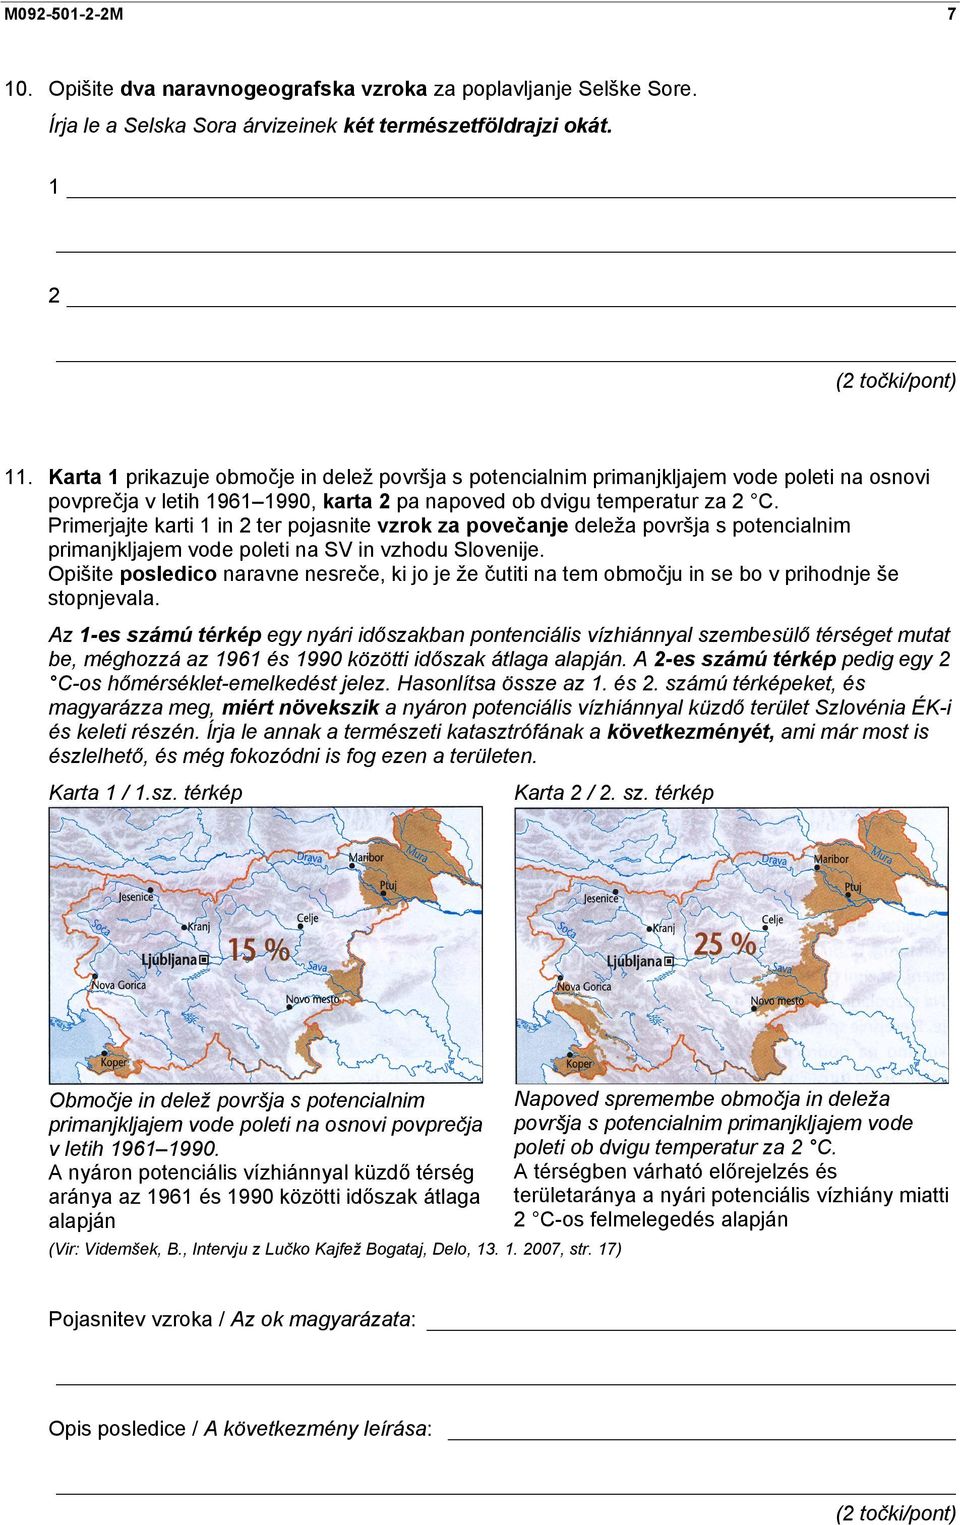 Primerjajte karti 1 in 2 ter pojasnite vzrok za povečanje deleža površja s potencialnim primanjkljajem vode poleti na SV in vzhodu Slovenije.